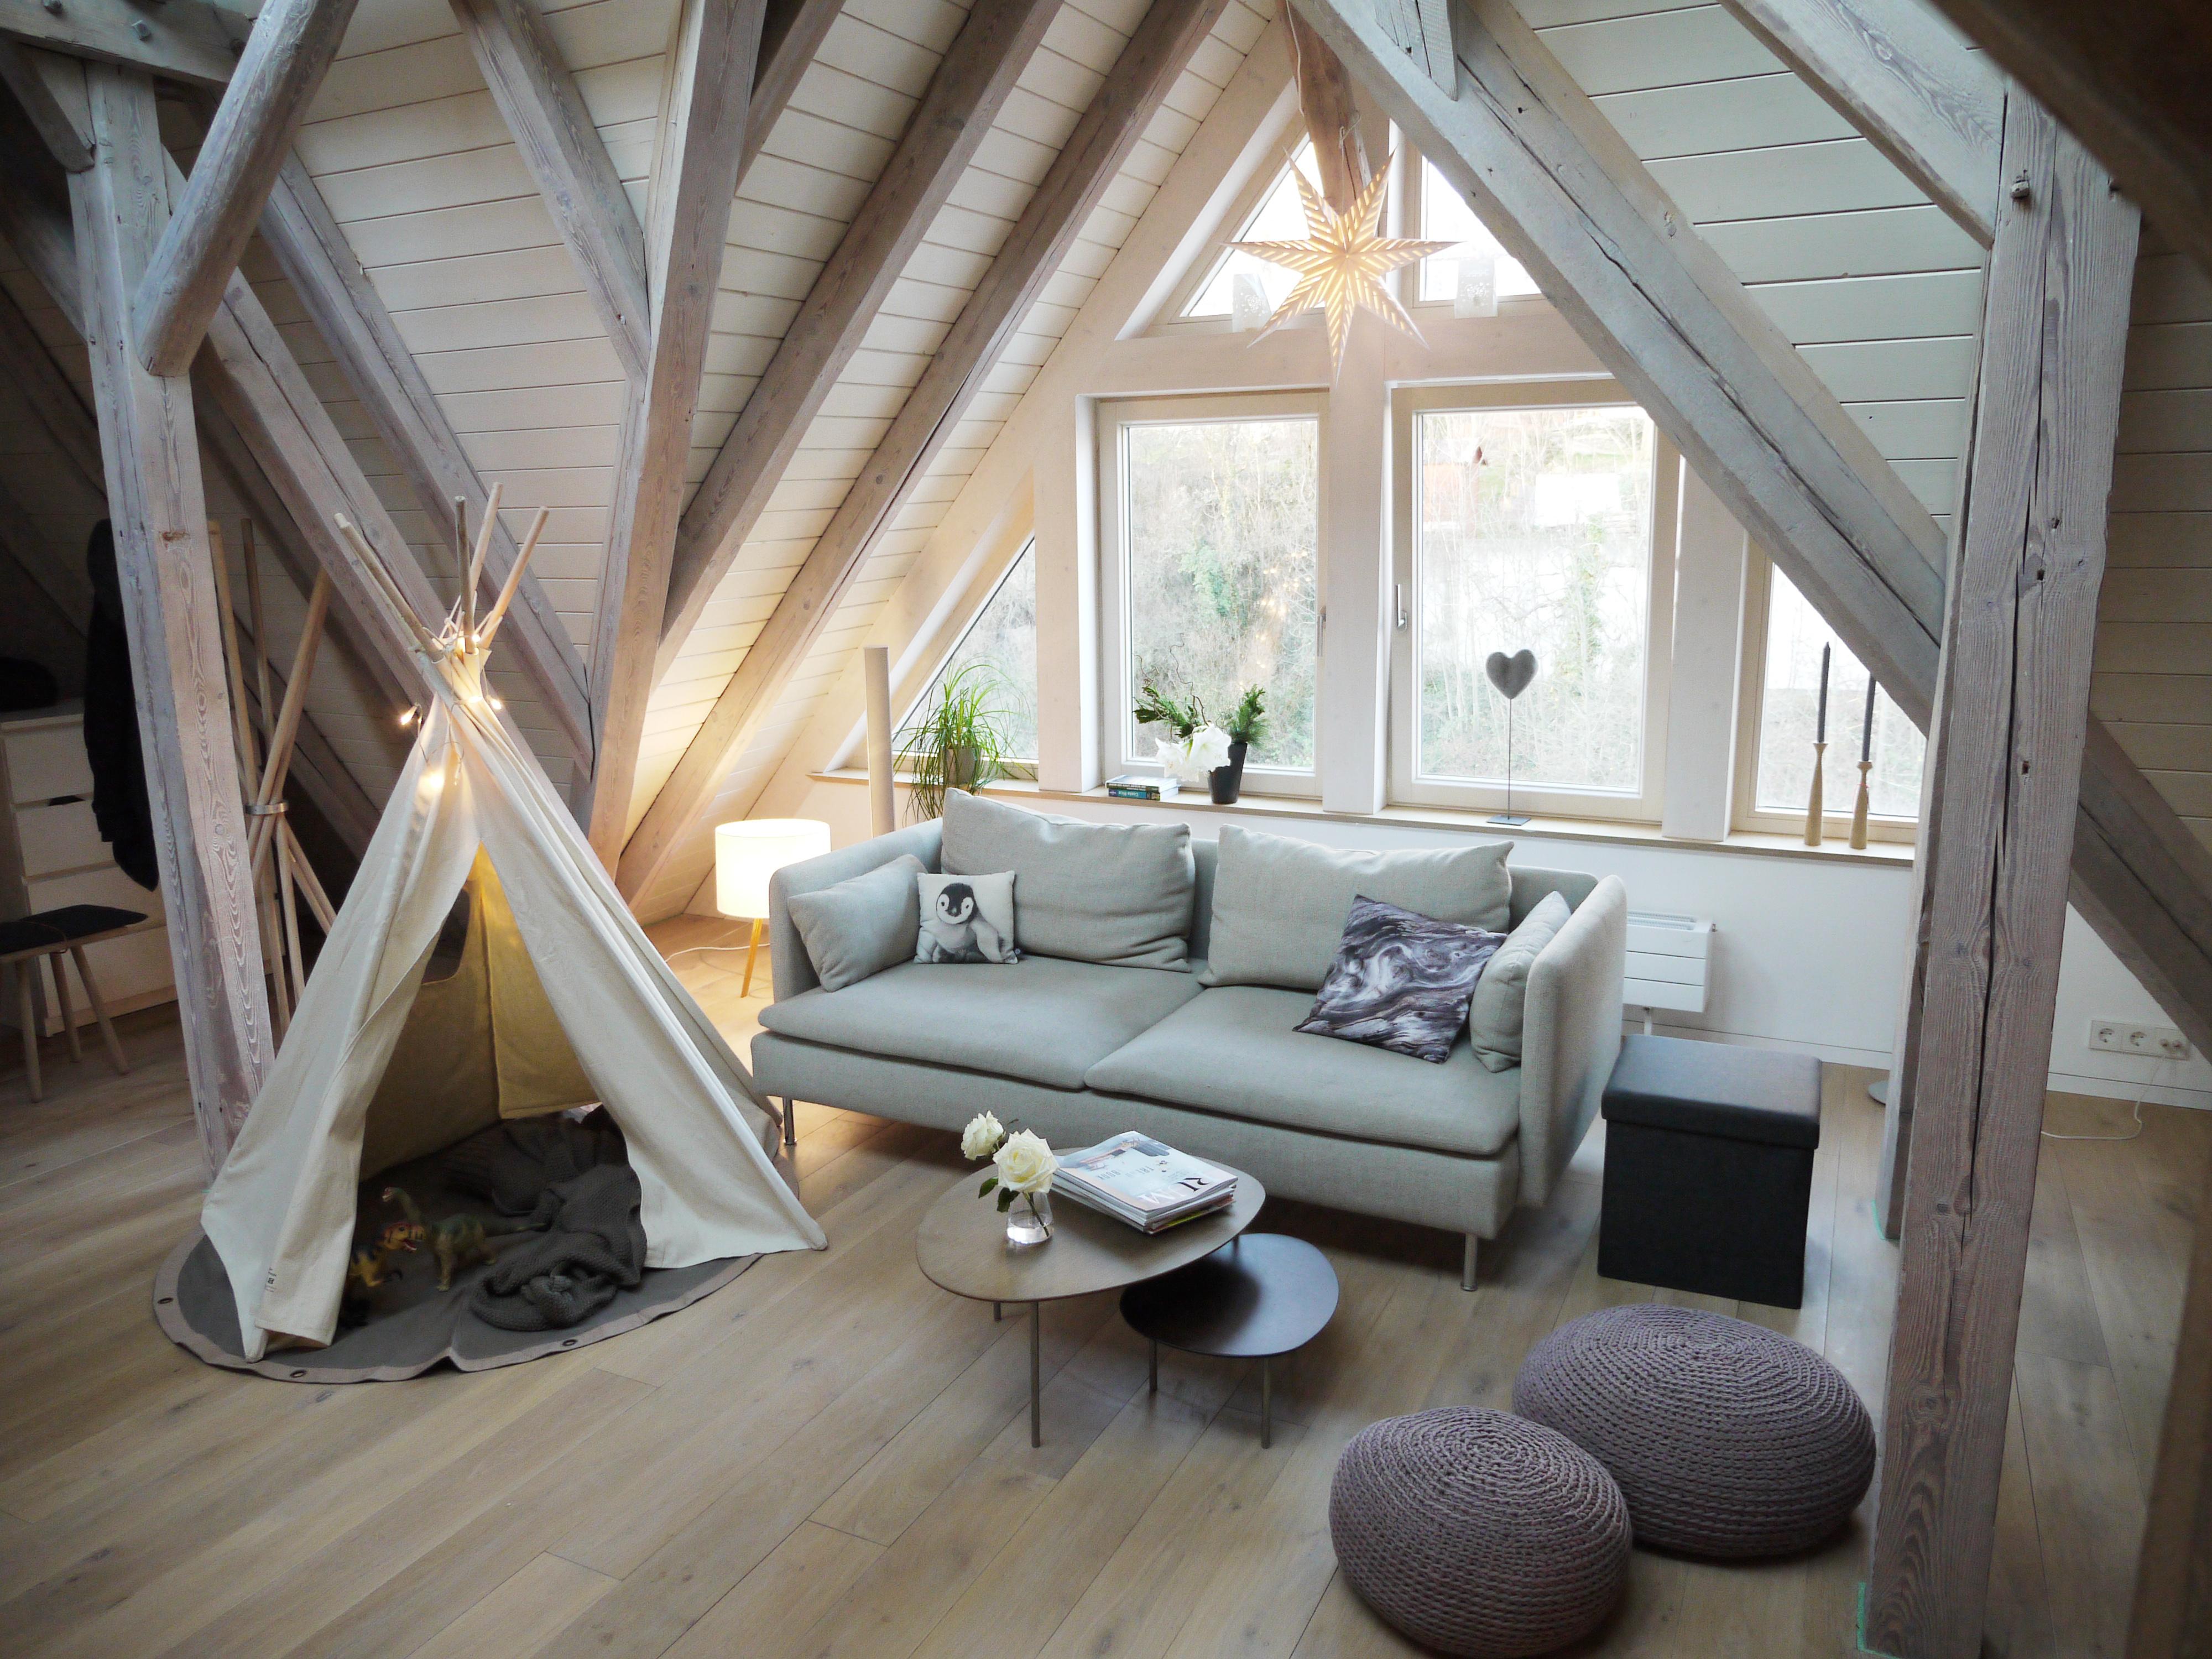 Dachgeschossausbau schafft maximalen Wohlfühlfaktor #dachgeschoss #nordisch #dachgeschossausbau ©HolzDesignPur